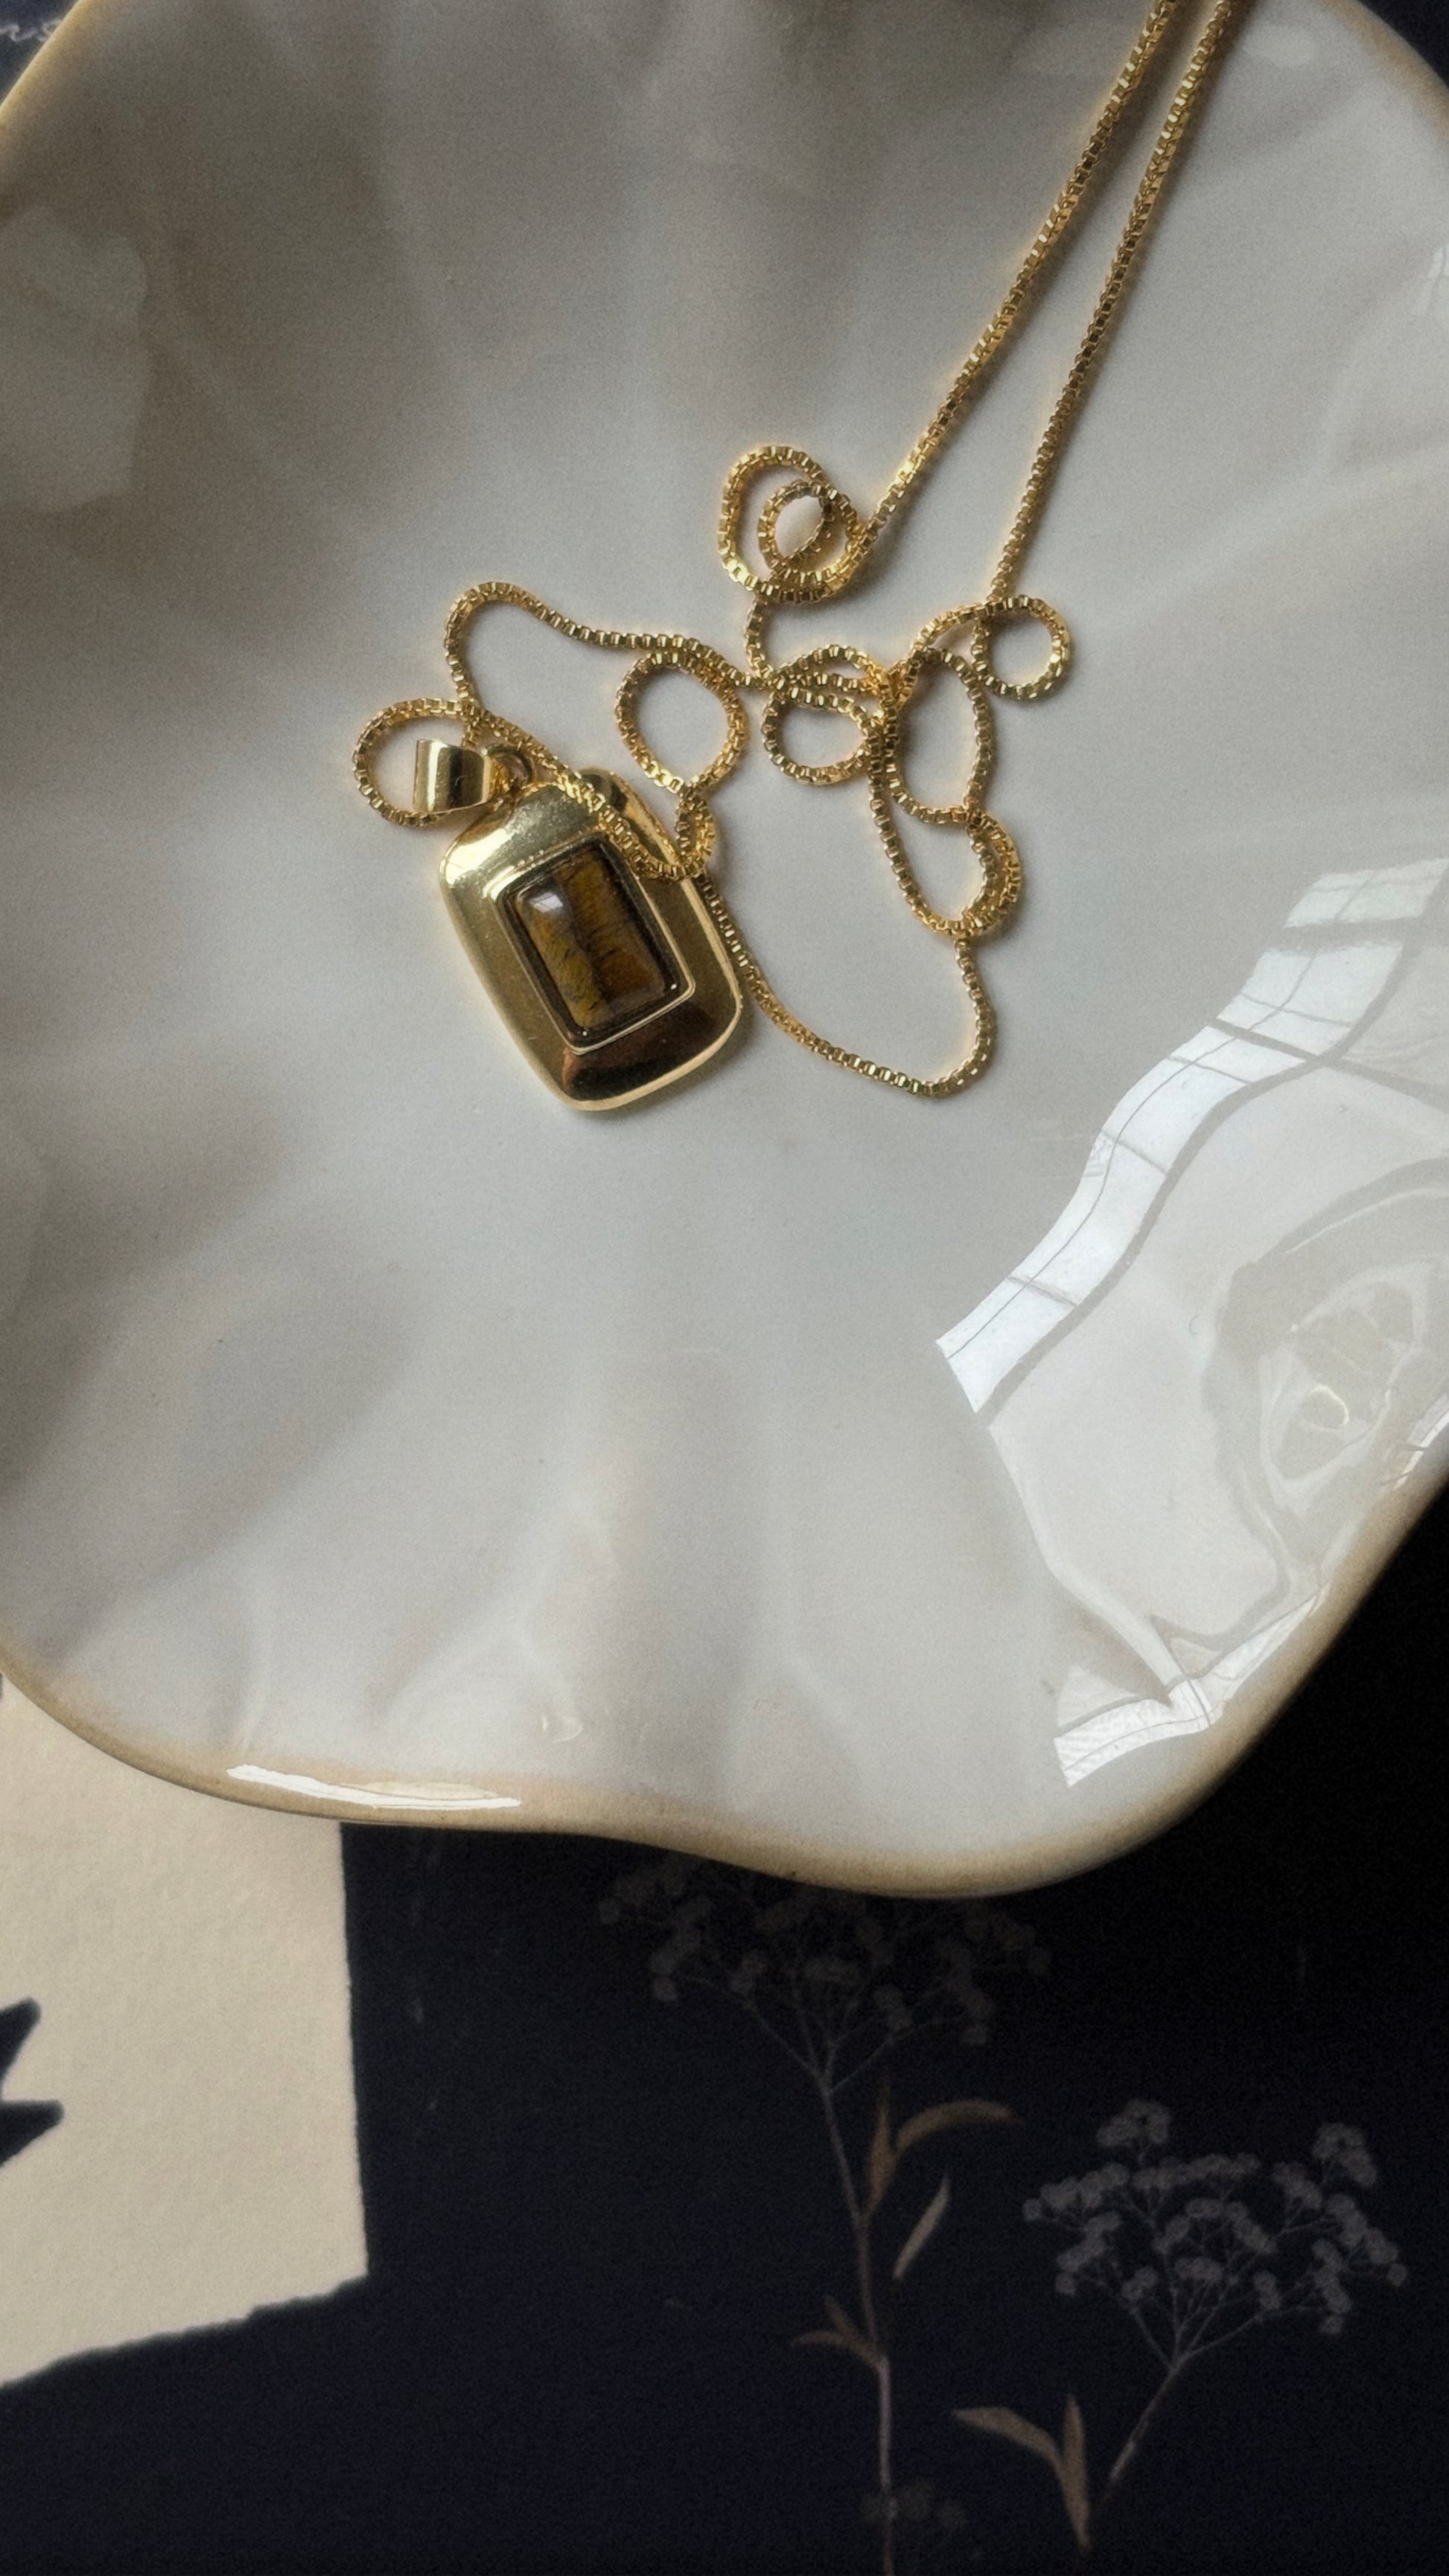 Dainty 14k Gold Box Chain Necklace - MILANA JEWELRY 